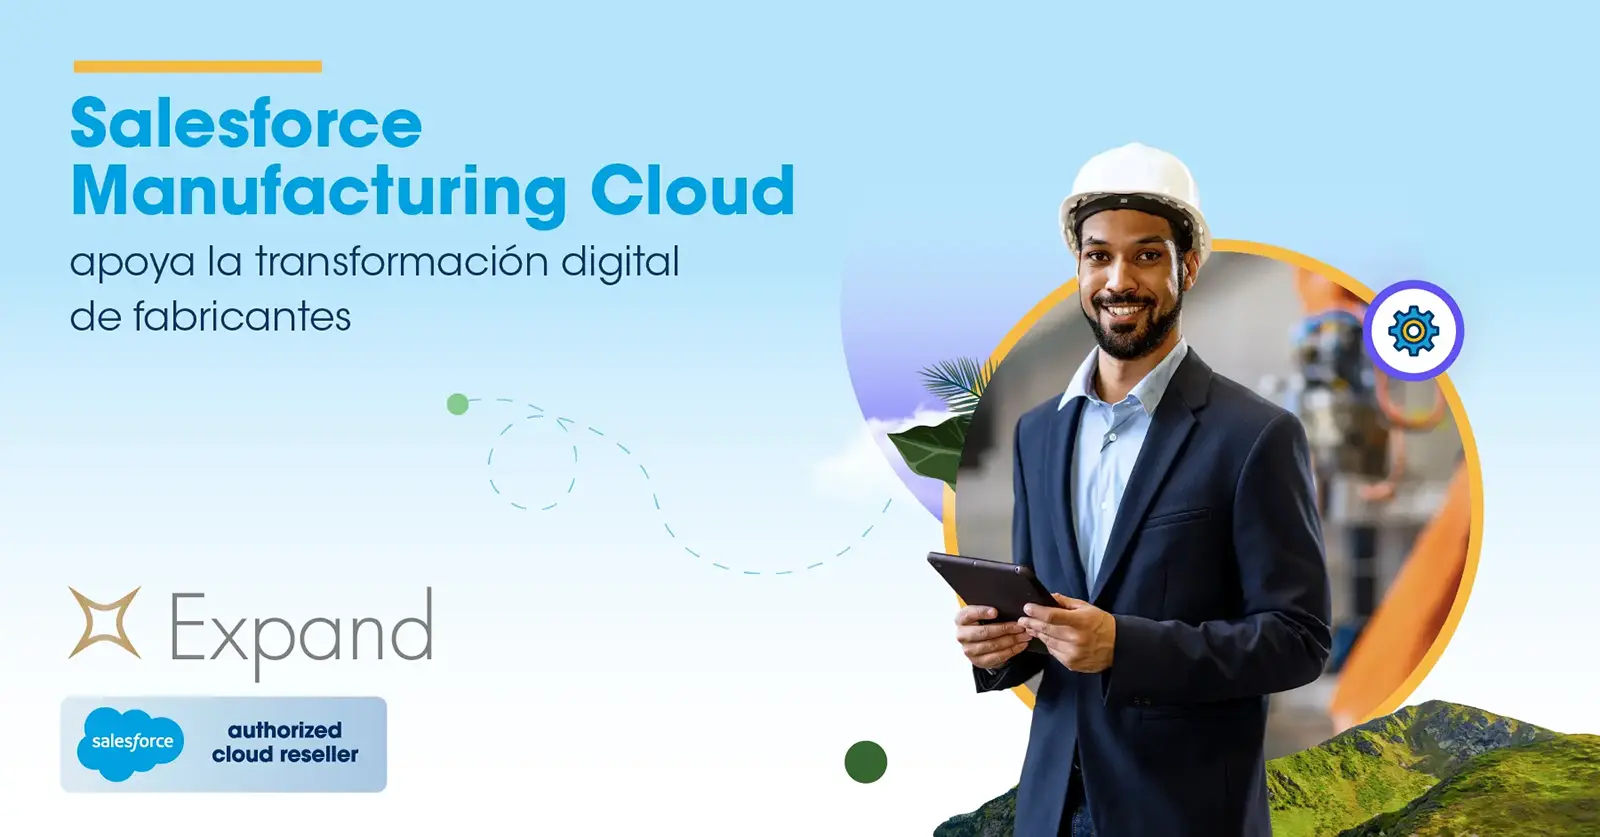 Salesforce Manufacturing Cloud apoya la transformación digital de fabricantes